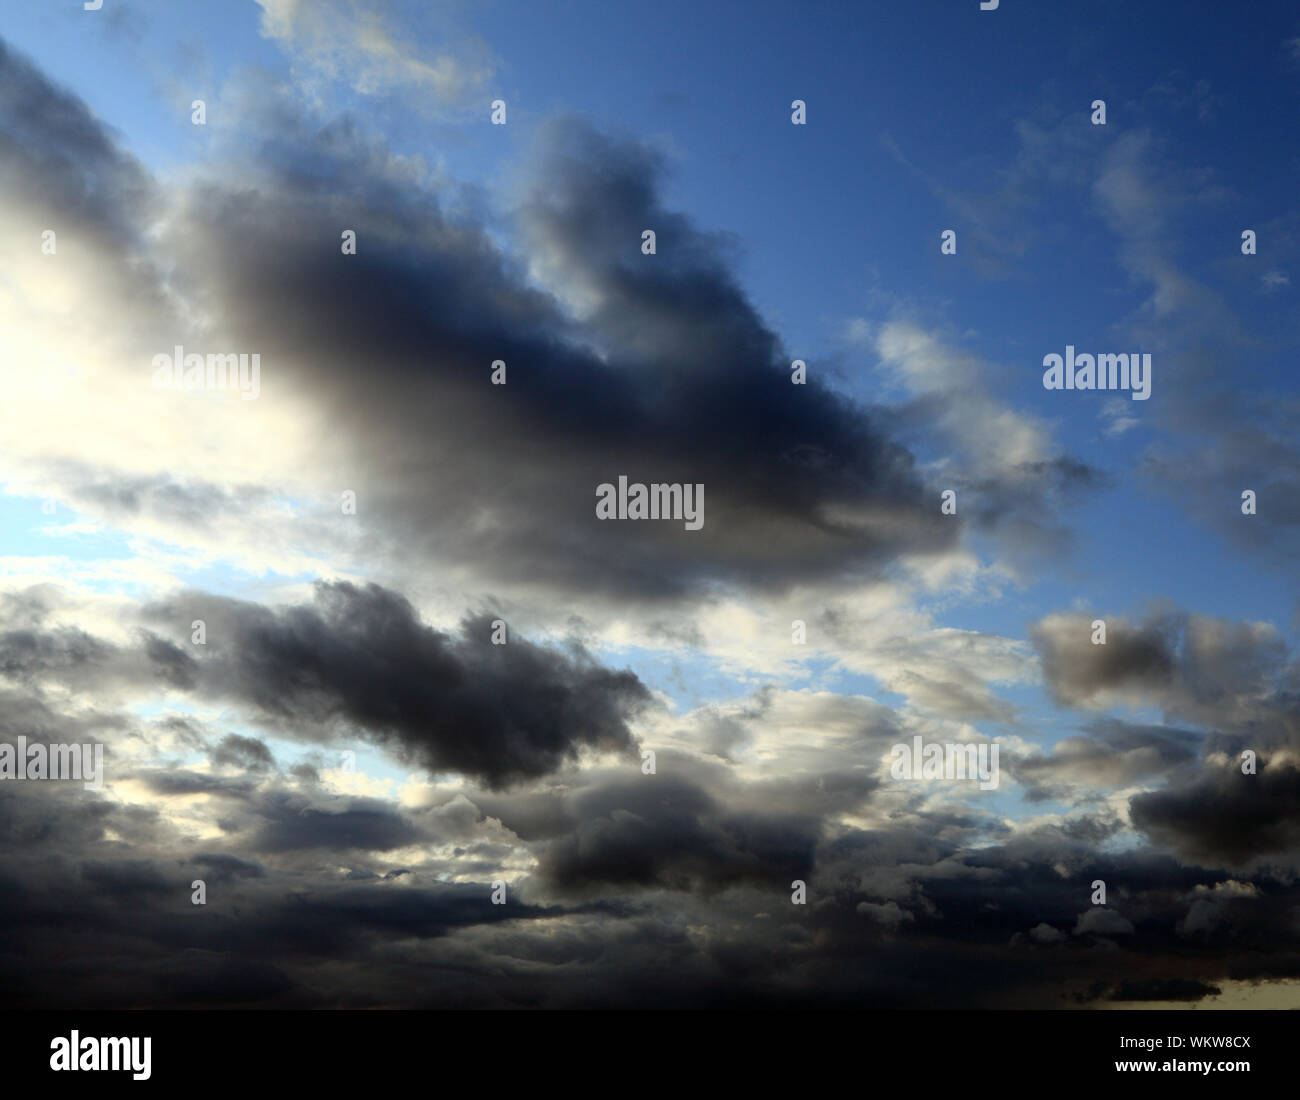 Regen Wolken, Anfahren, grau, dunkel, weiß, Wolken, blauer Himmel, Wetter Stockfoto